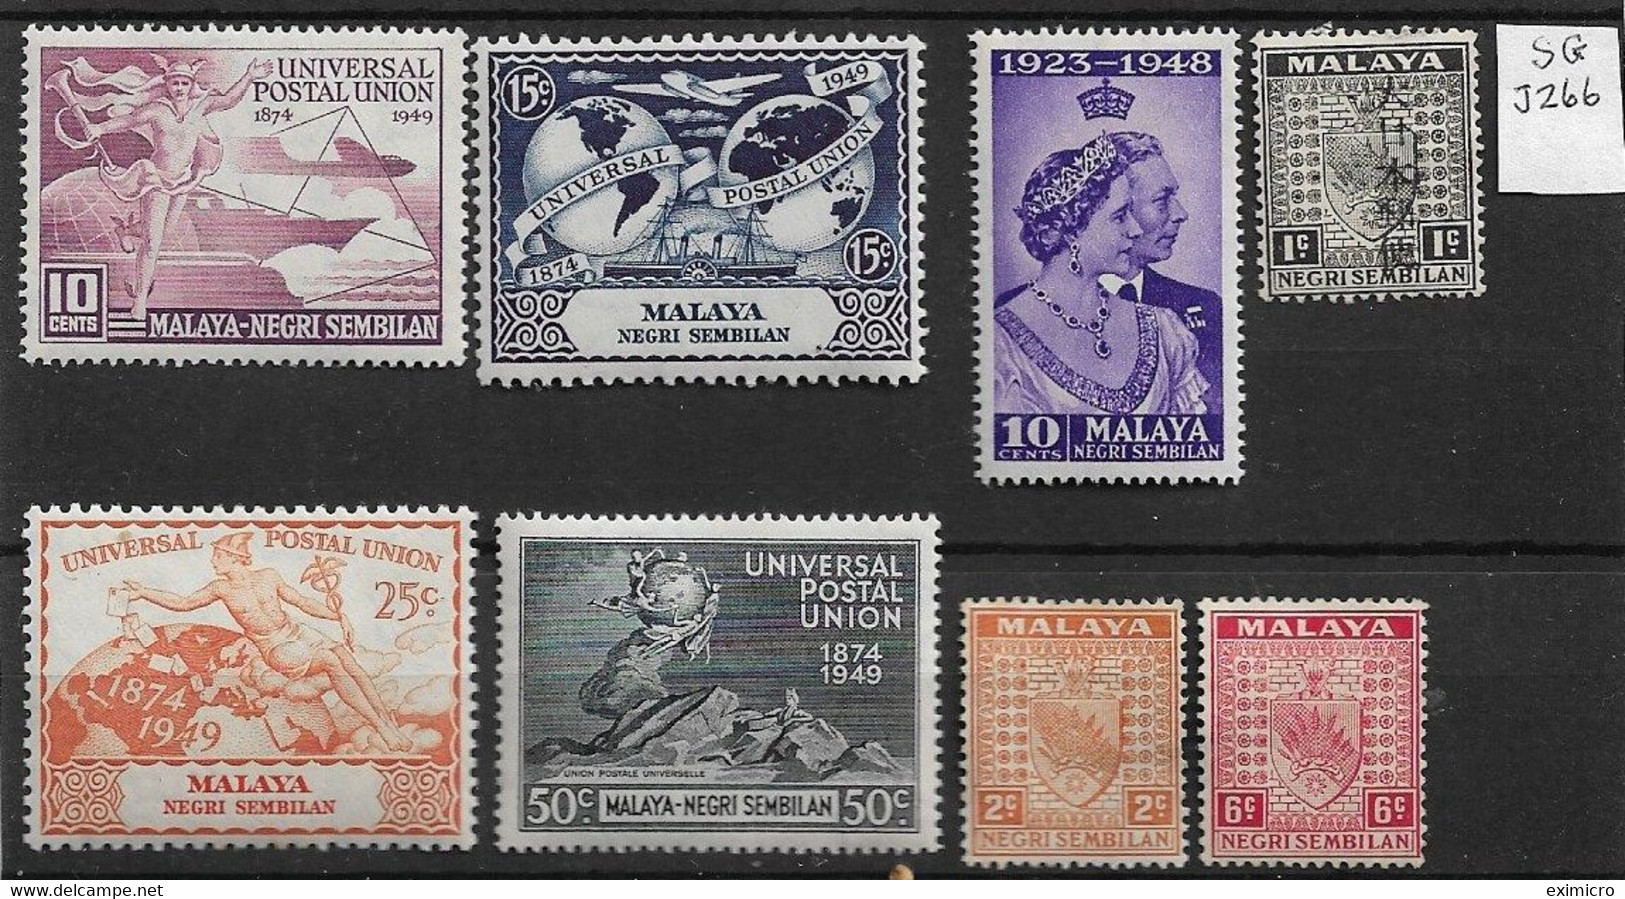 MALAYA - NEGRI SEMBILAN 1937 - 1949 MOUNTED MINT SELECTION Cat £27+ - Negri Sembilan